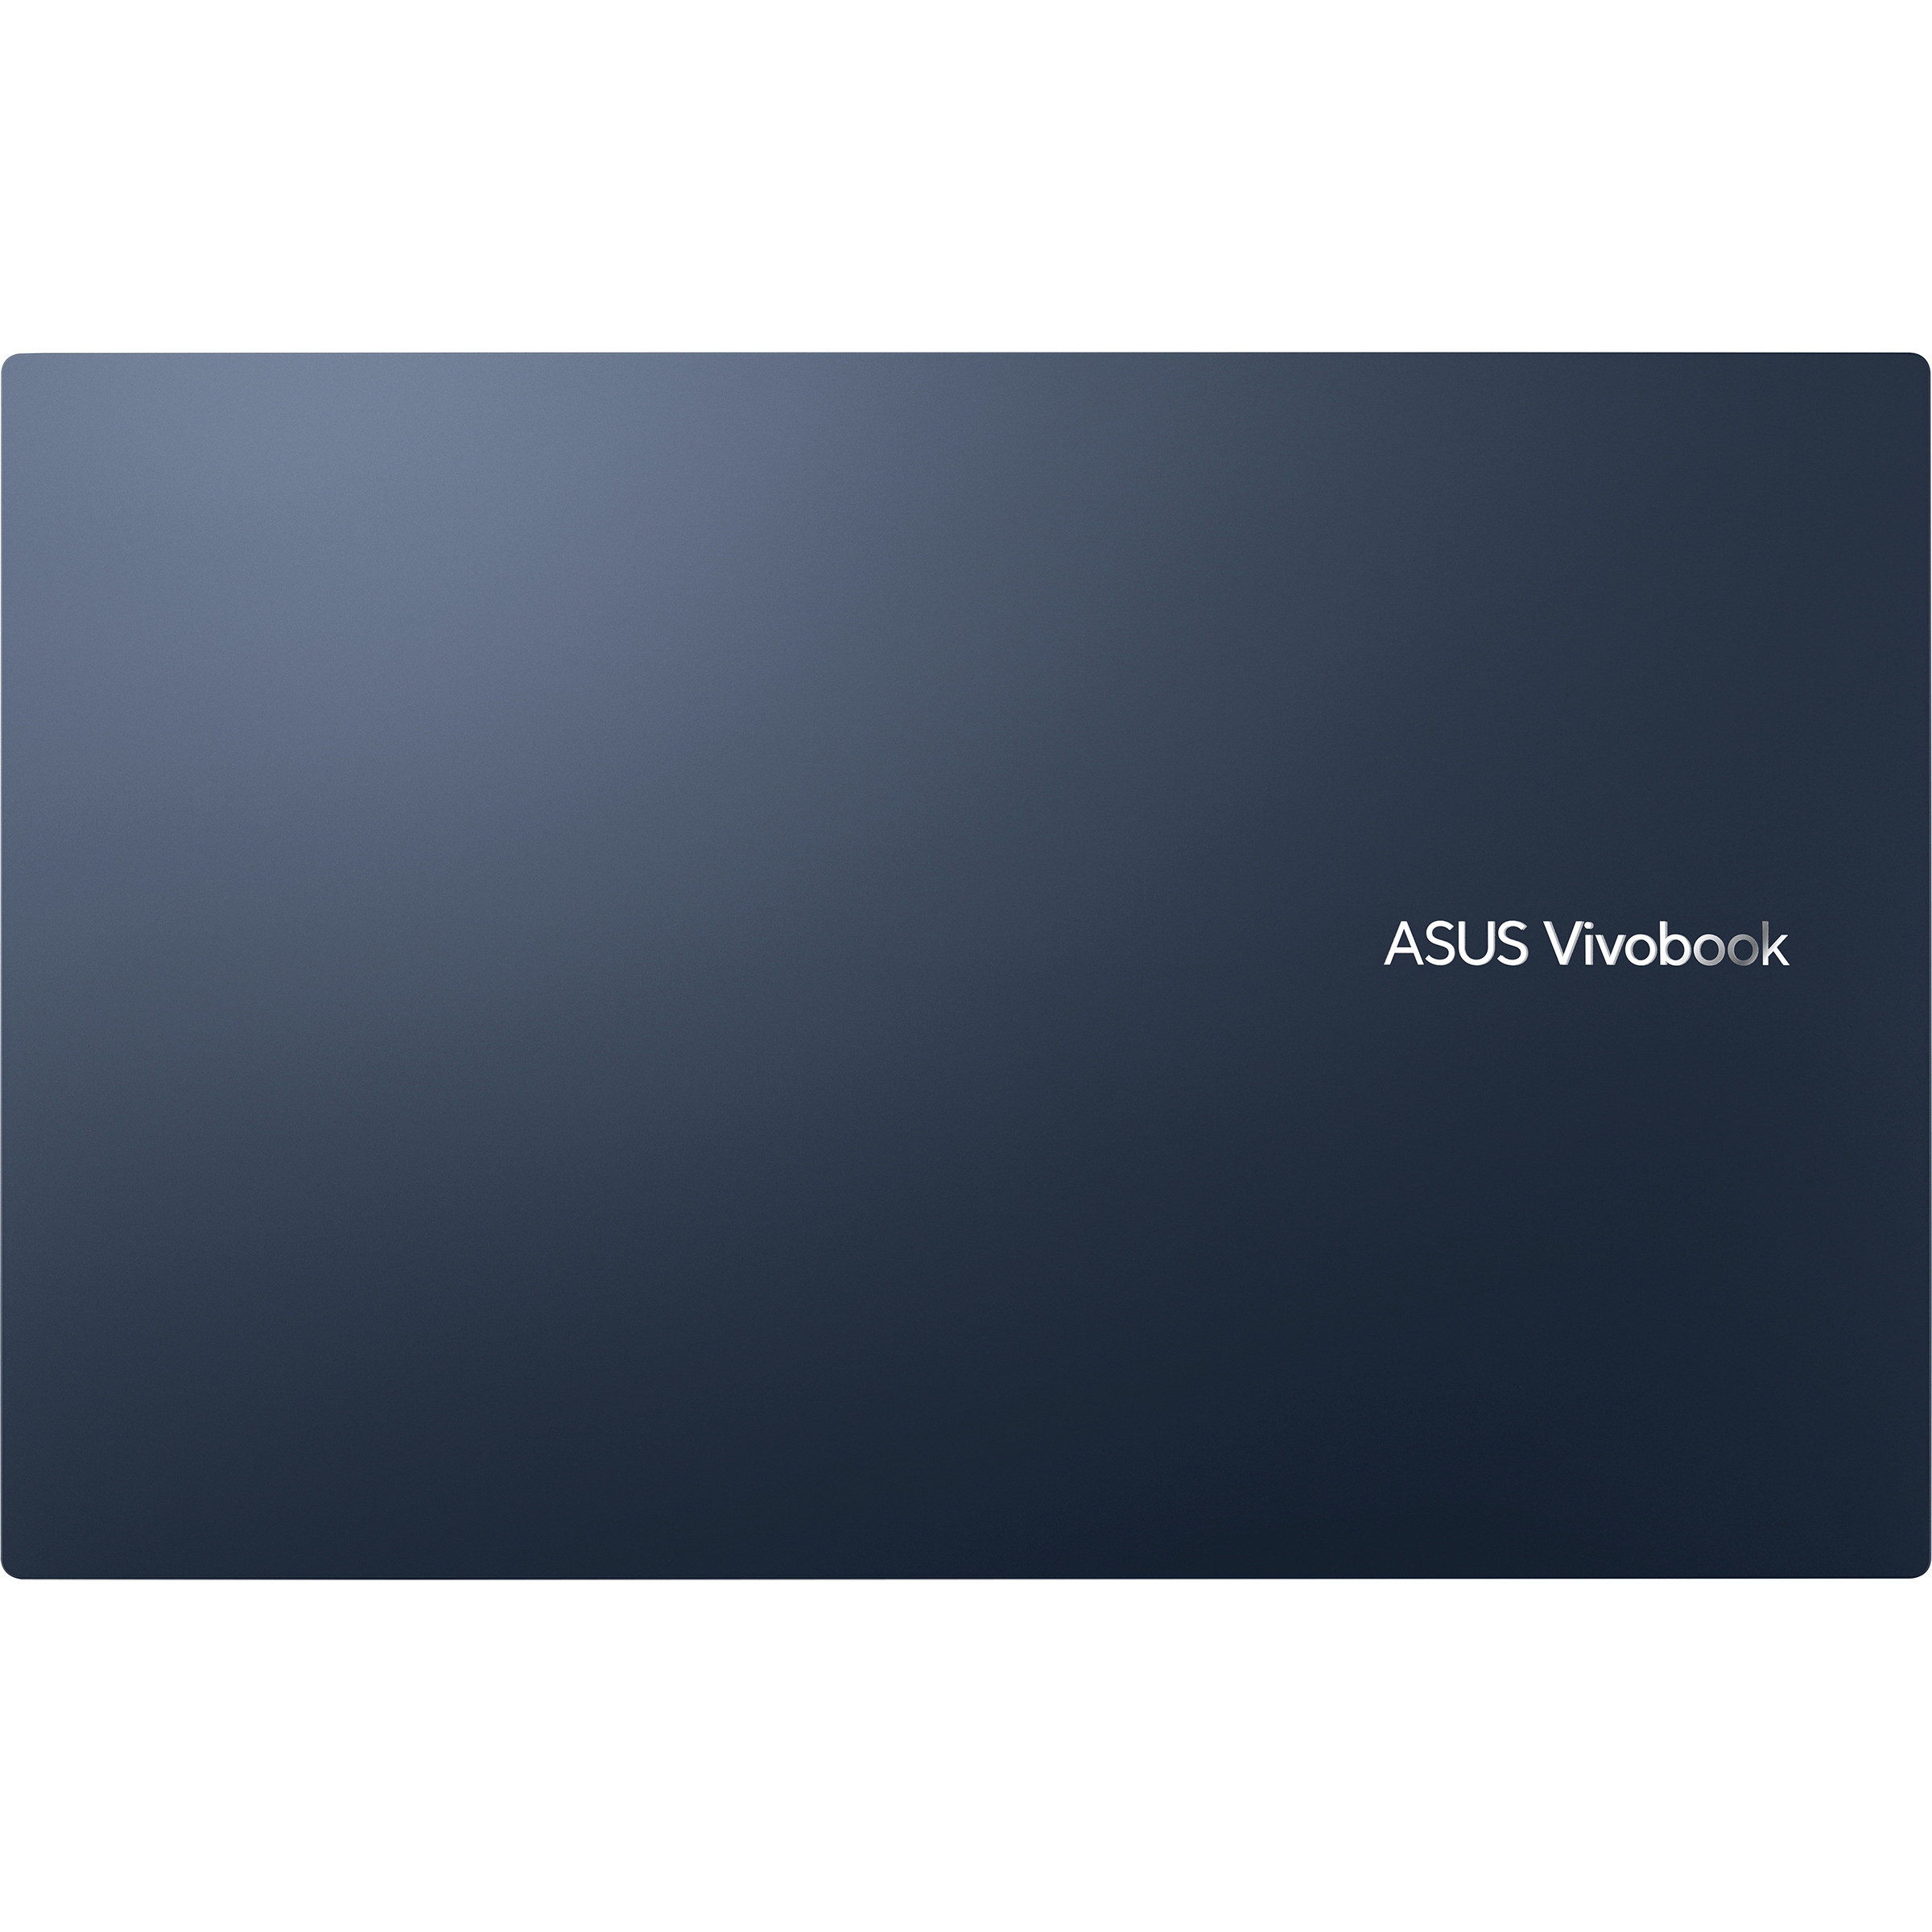 Ryzen 5000 series)｜Laptops For Home｜ASUS Vivobook 17 AMD Global (M1702,